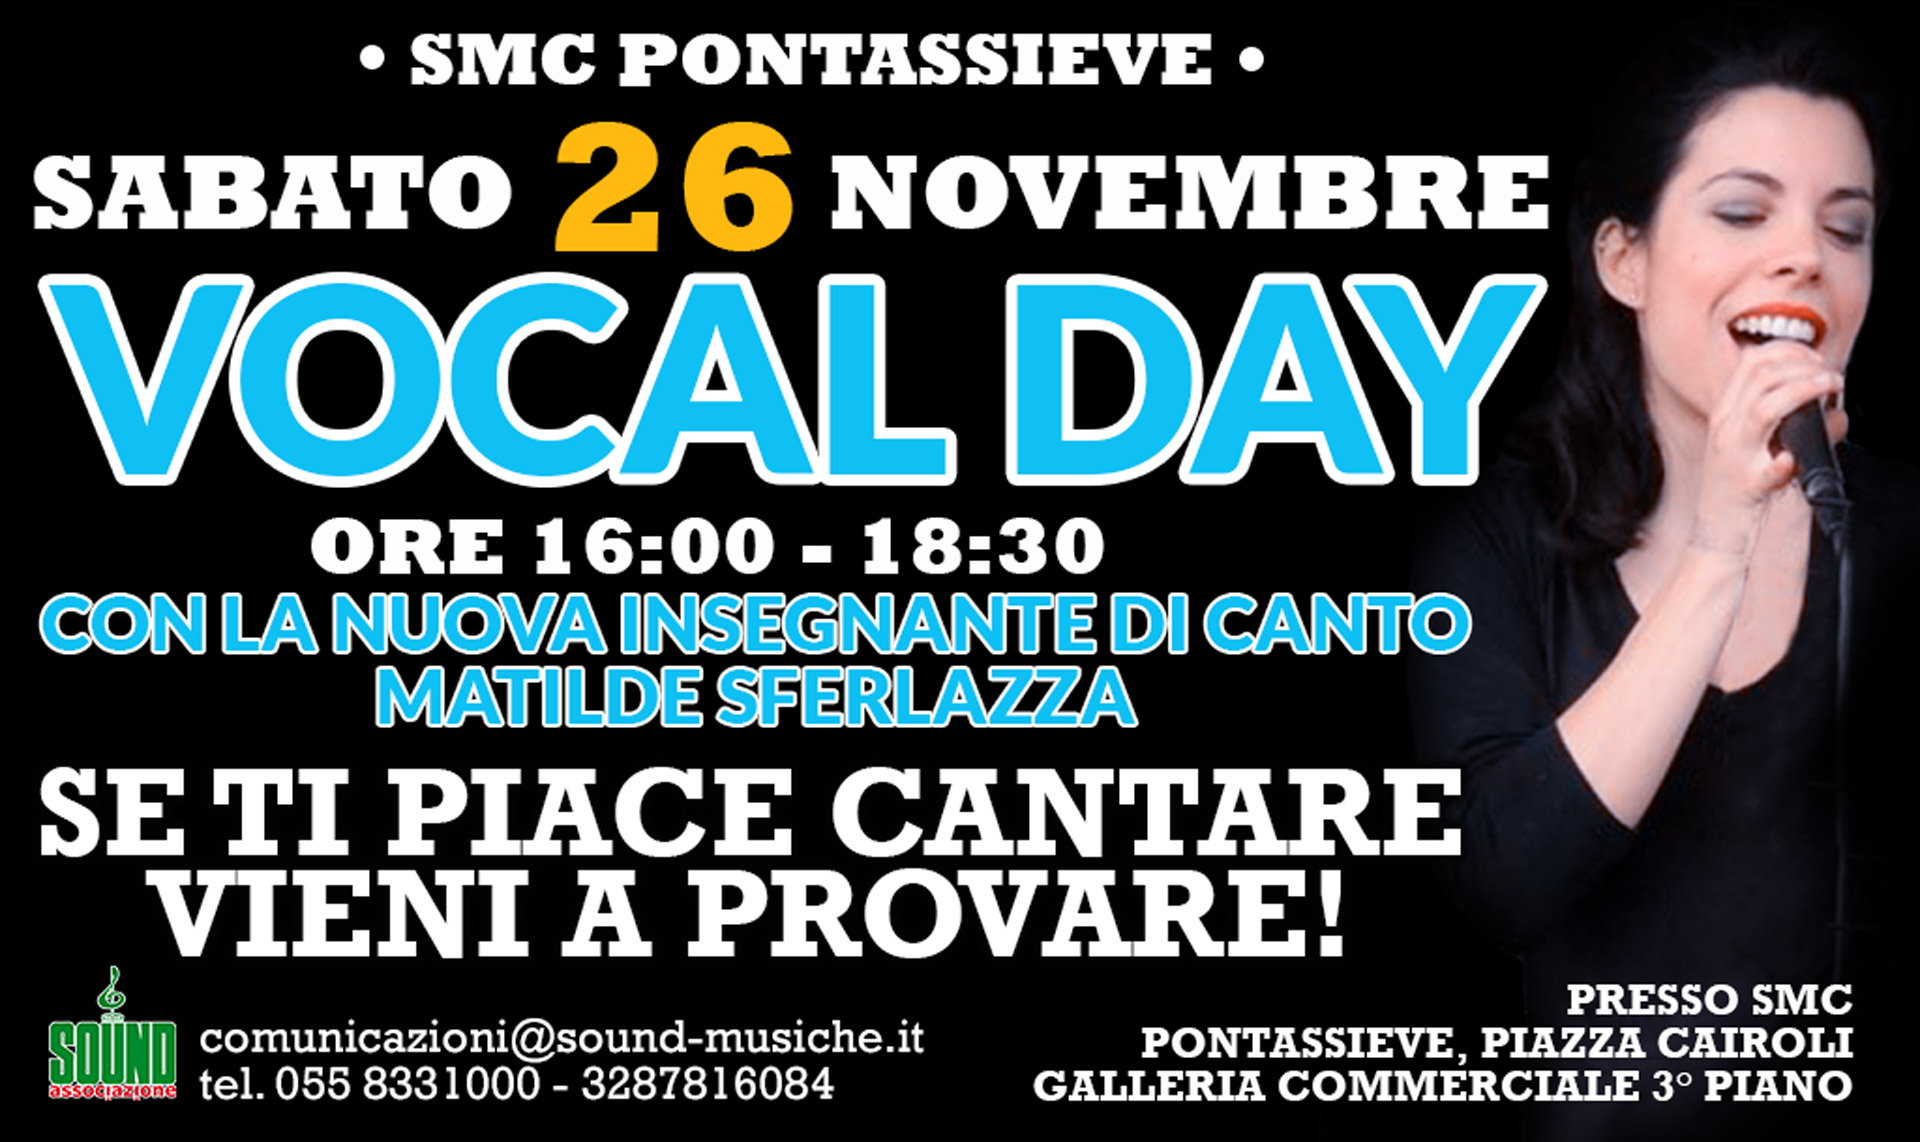 Vocal Day Sabato 26 Novembre ore 16 – 18:30 con Matilde Sferlazza